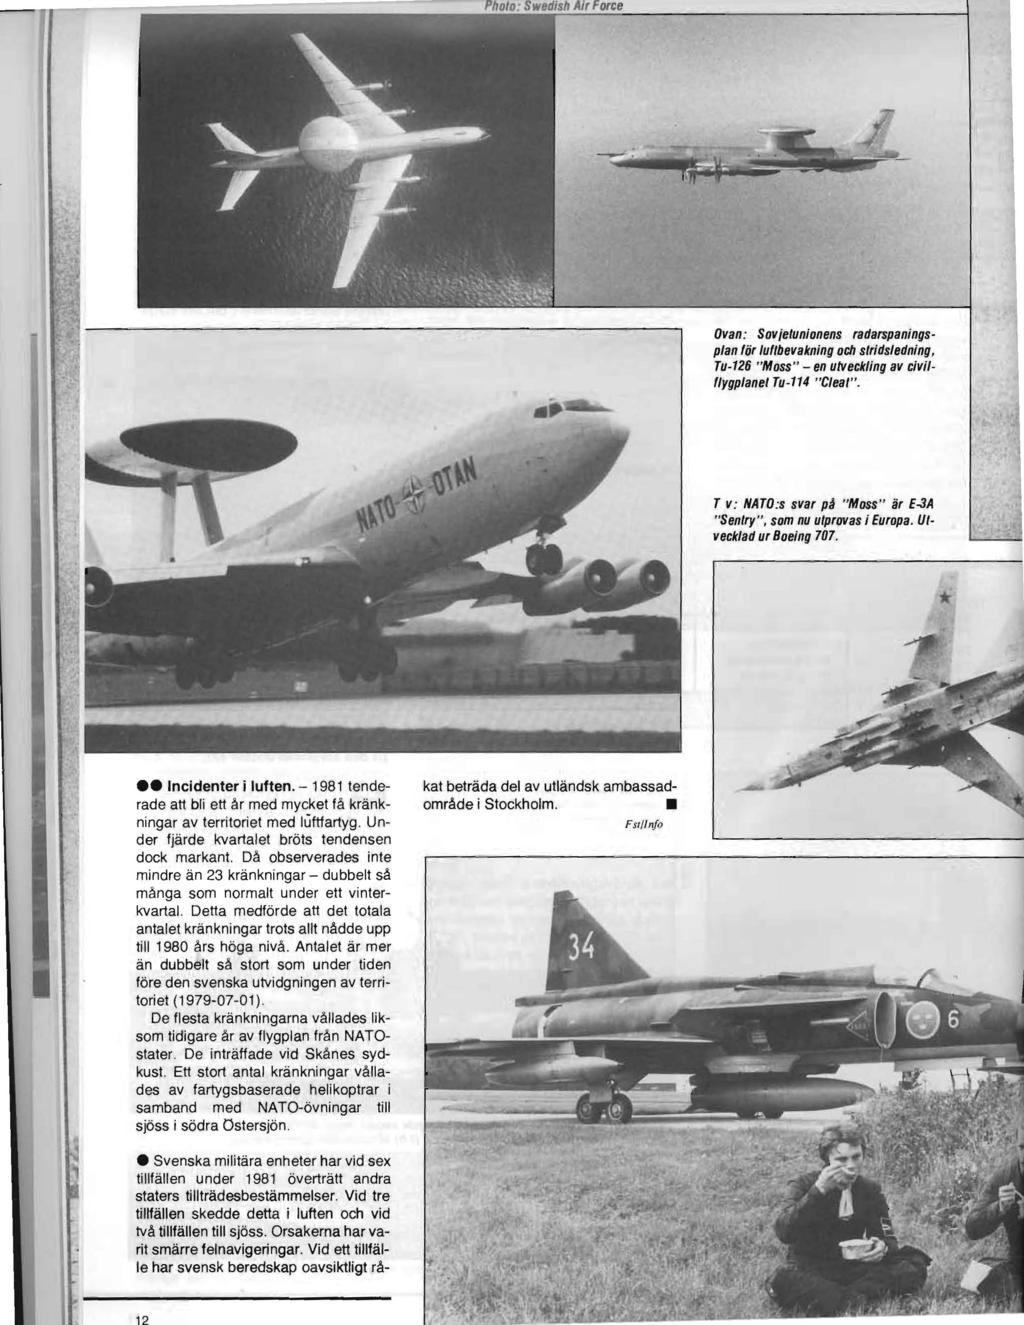 Ovan : Sovjetunionens radarspaningsplan för luftbevakning och stridsledning, Tu-126 "Moss" - en utveckling av civilflygplanet Tu-114 "Cleat". T v: NATO:s svar på "Mass" är E.